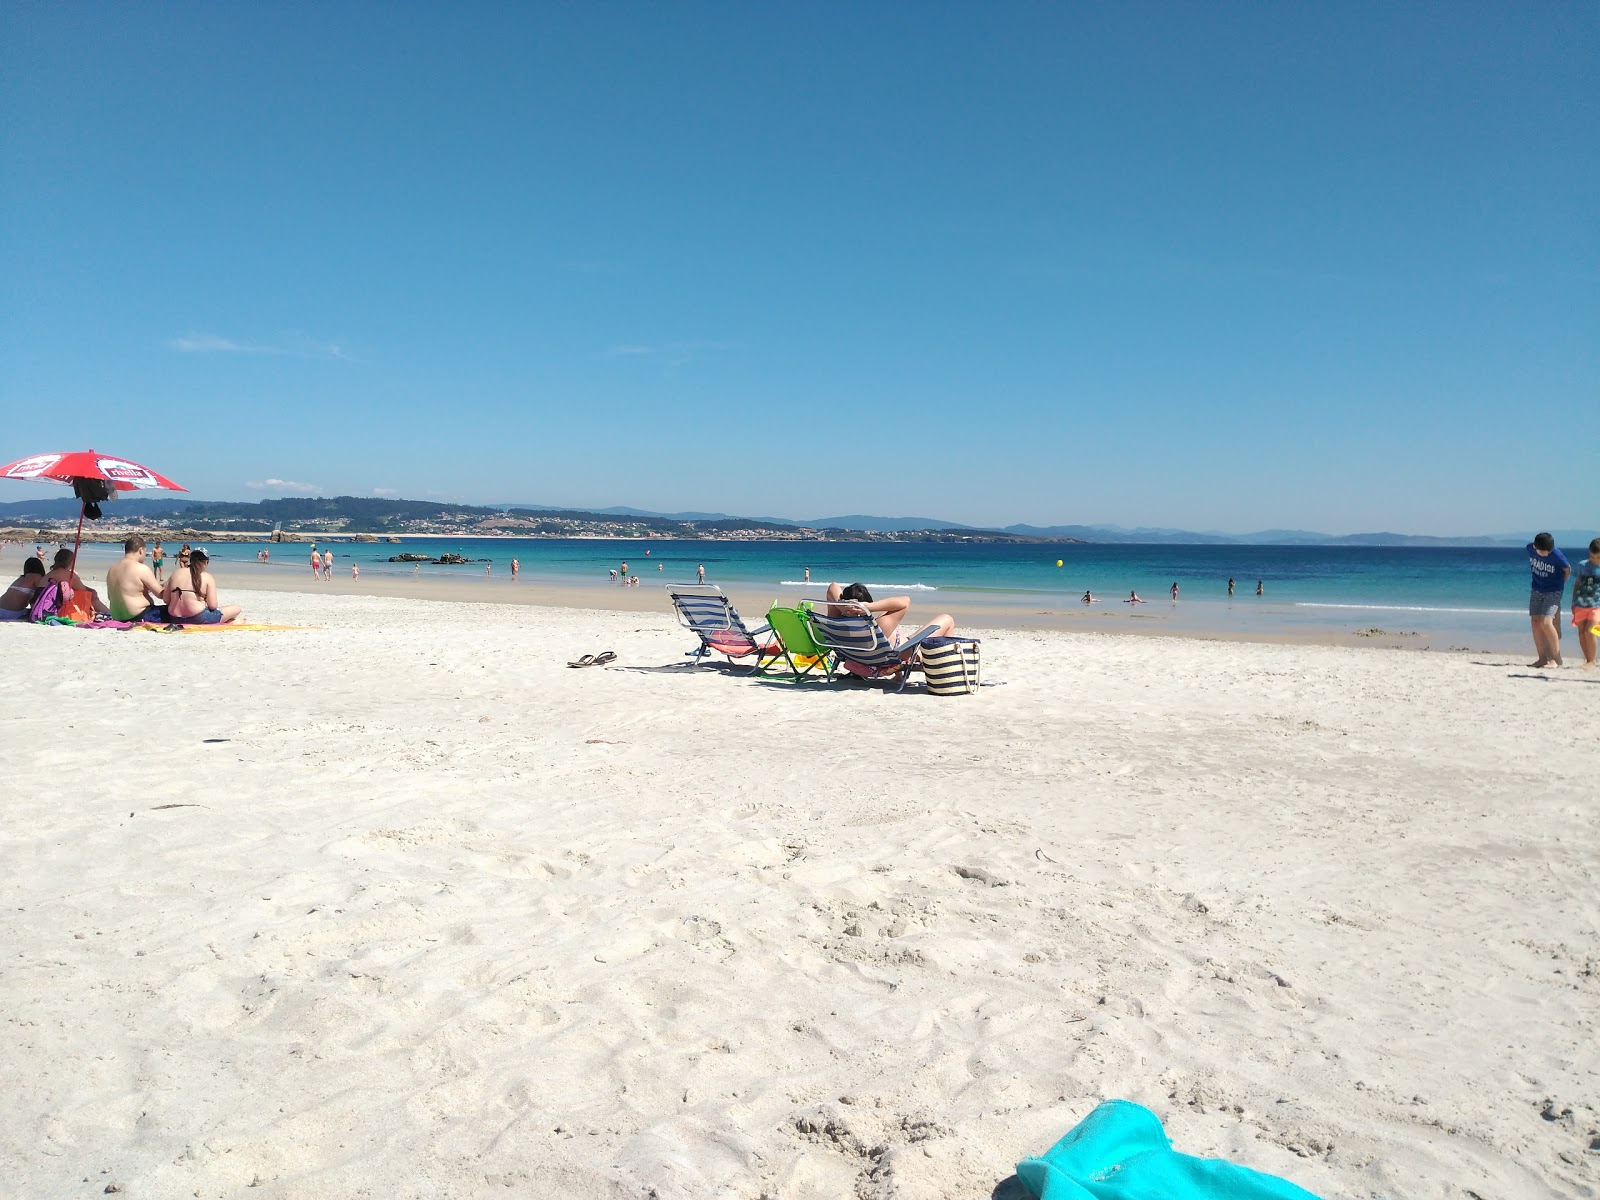 Fotografija Area da Cruz beach priljubljeno mesto med poznavalci sprostitve